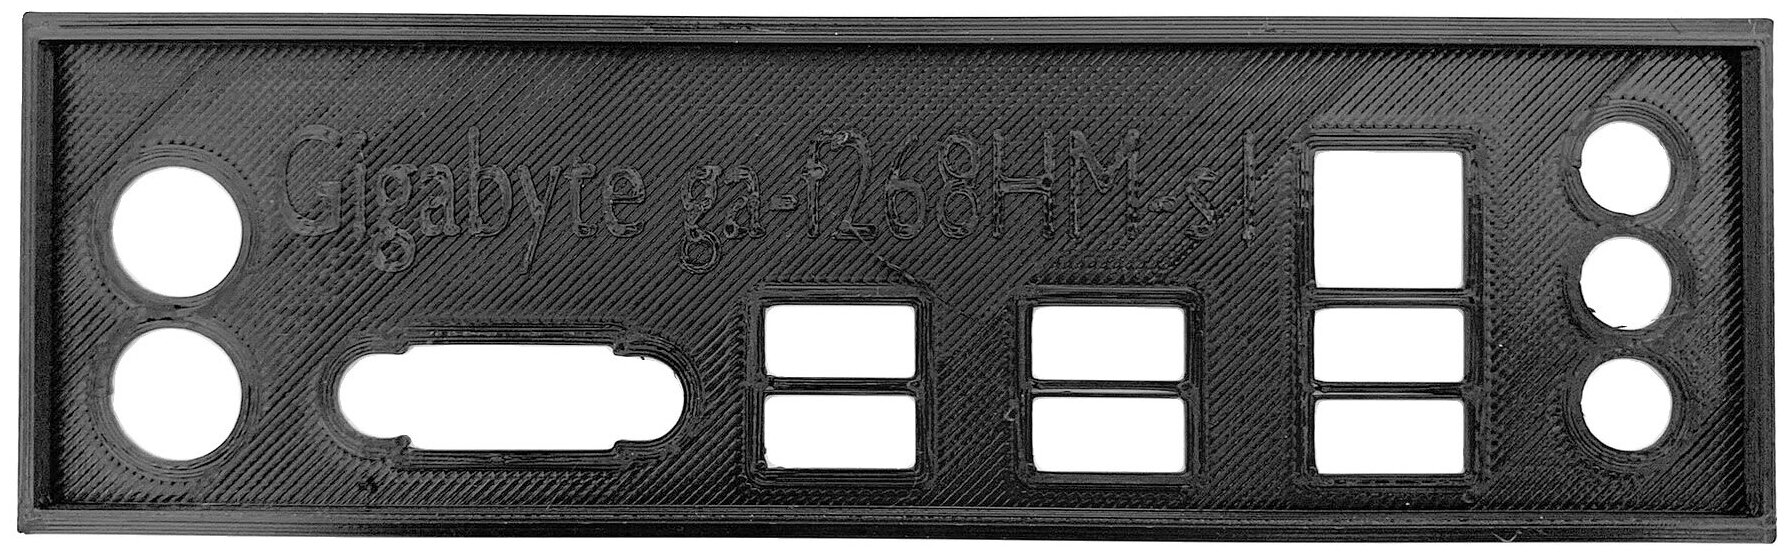 Пылезащитная заглушка, задняя панель для материнской платы Gigabyte GA-F2A68HM-S1, черный